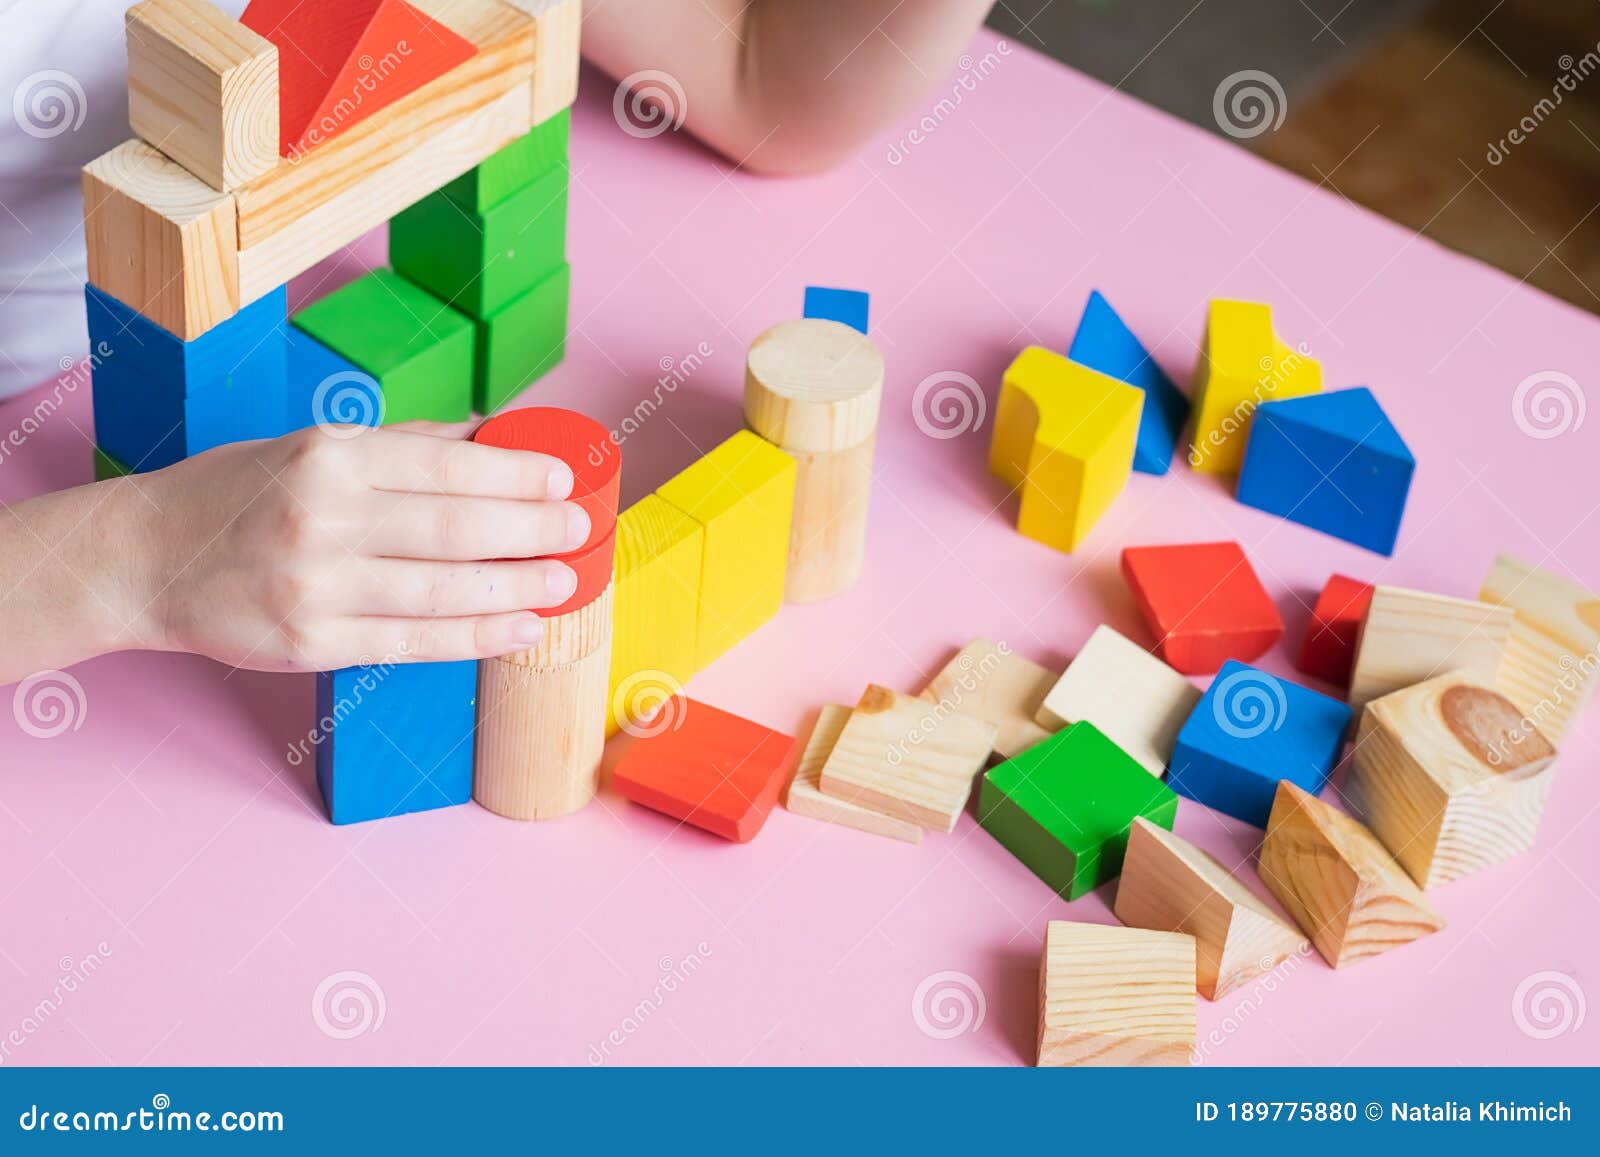 μικρό παιδί παίζει συναρμολόγηση με ξύλινη κατασκευή κύβων. έννοια της  εκπαίδευσης για τα παιδιά. παιδικά παιχνίδια Στοκ Εικόνες - εικόνα από  childhood: 189775880